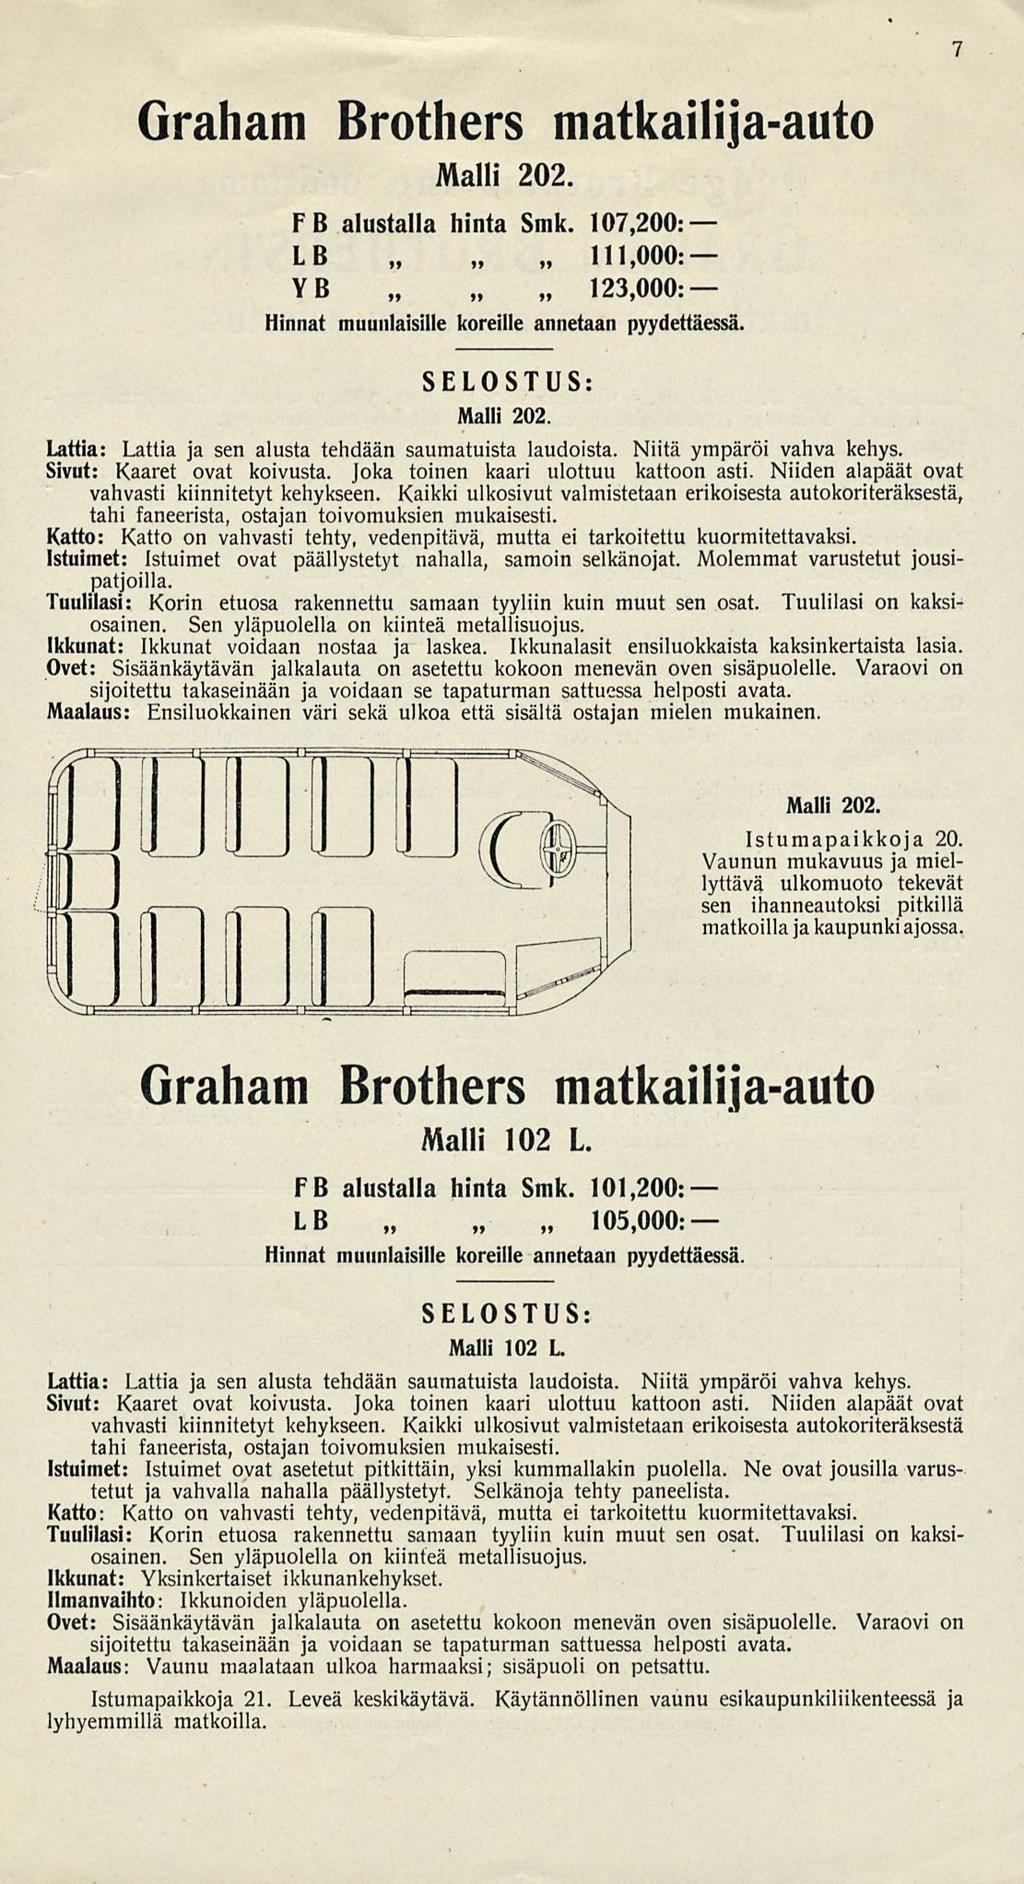 Graham Brothers matkailijaauto Malli 202 7 F B alustalla hinta Smk. 107,200: LB 111,000: YB 123,000: Hinnat muunlaisille koreille annetaan pyydettäessä. SELOSTUS: Malli 202.